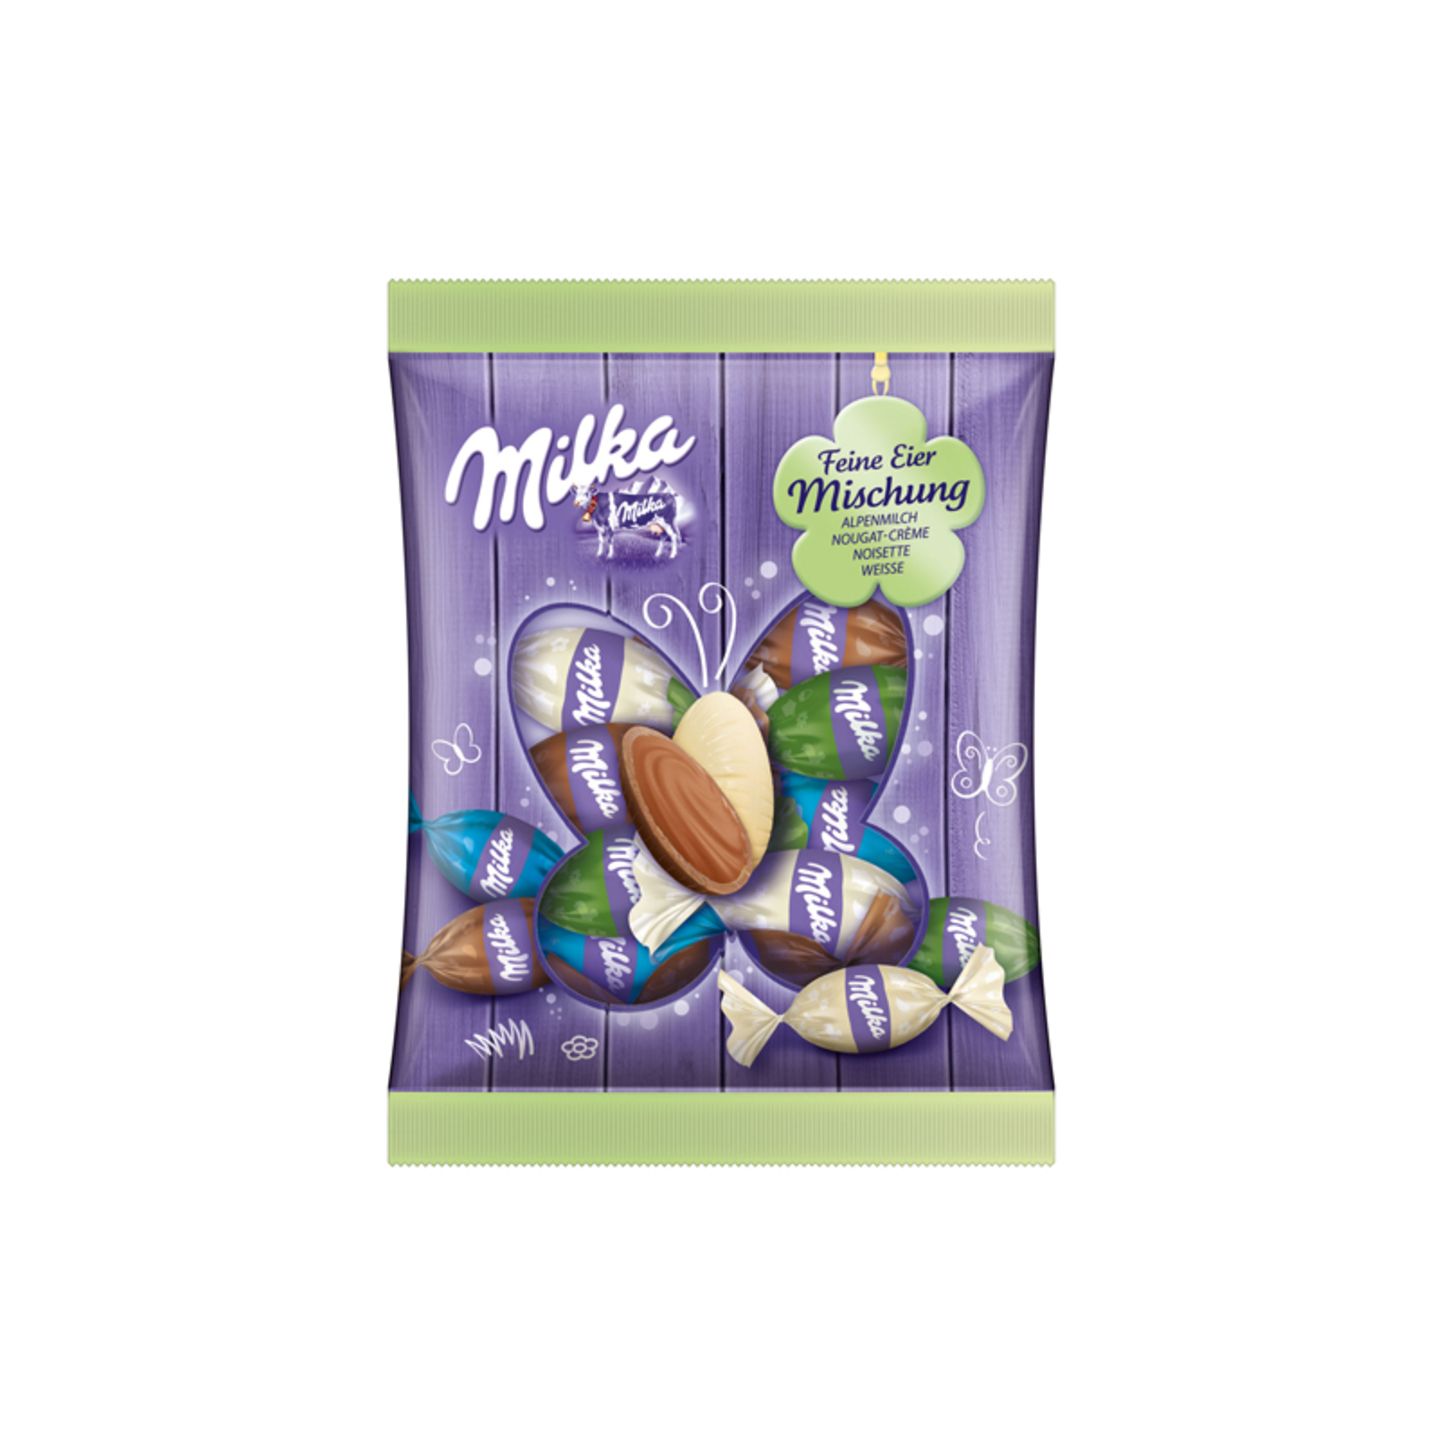 Schokoladeneier im Test: Feine Eier-Mischung von Milka